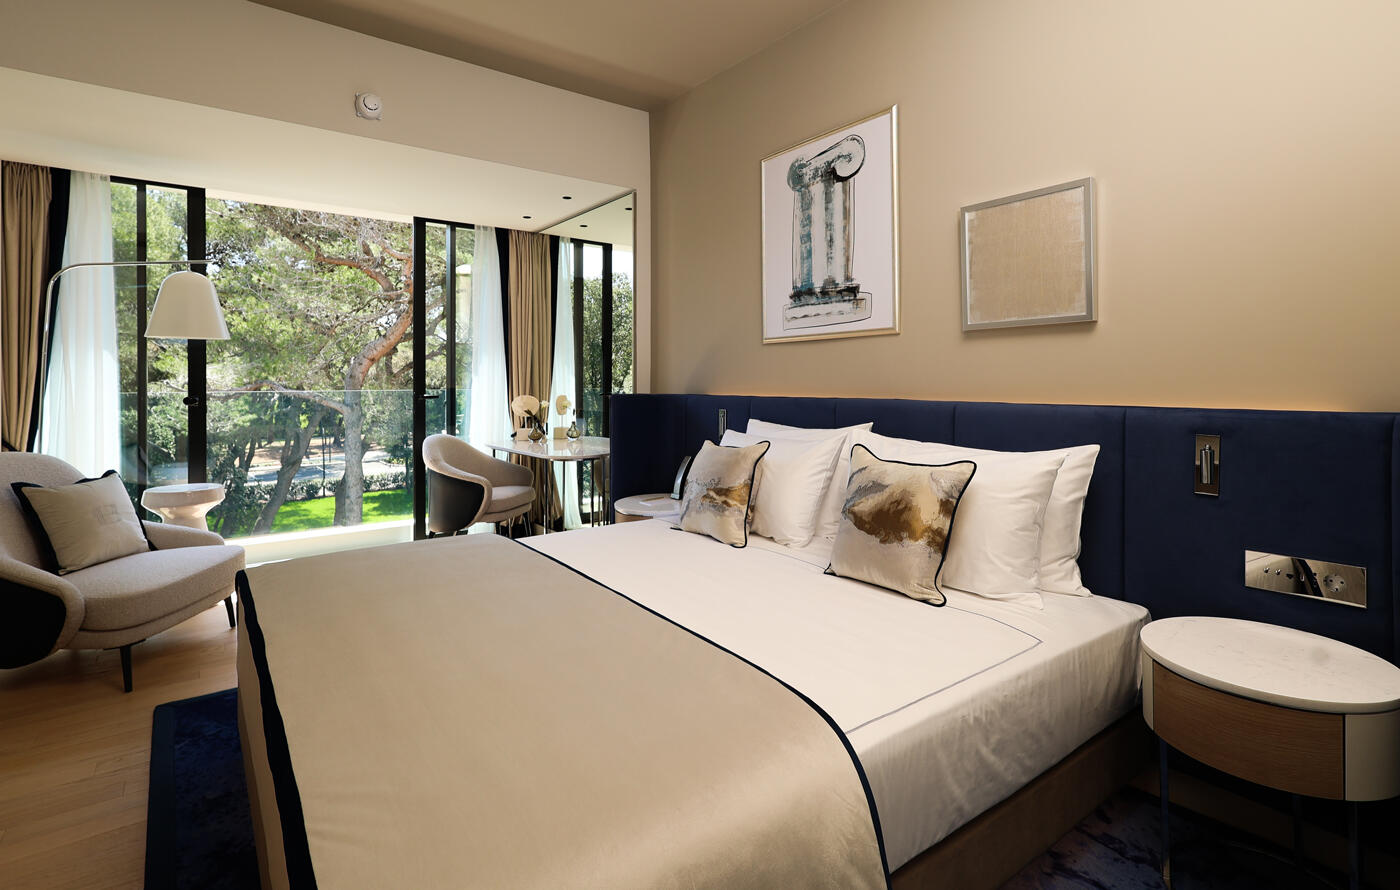 Hotelschlafzimmer mit Doppelbett und beigen Tönen. An der Wand hängen zwei Bilder. Im Hintergrund ist eine offene Terassentüre.